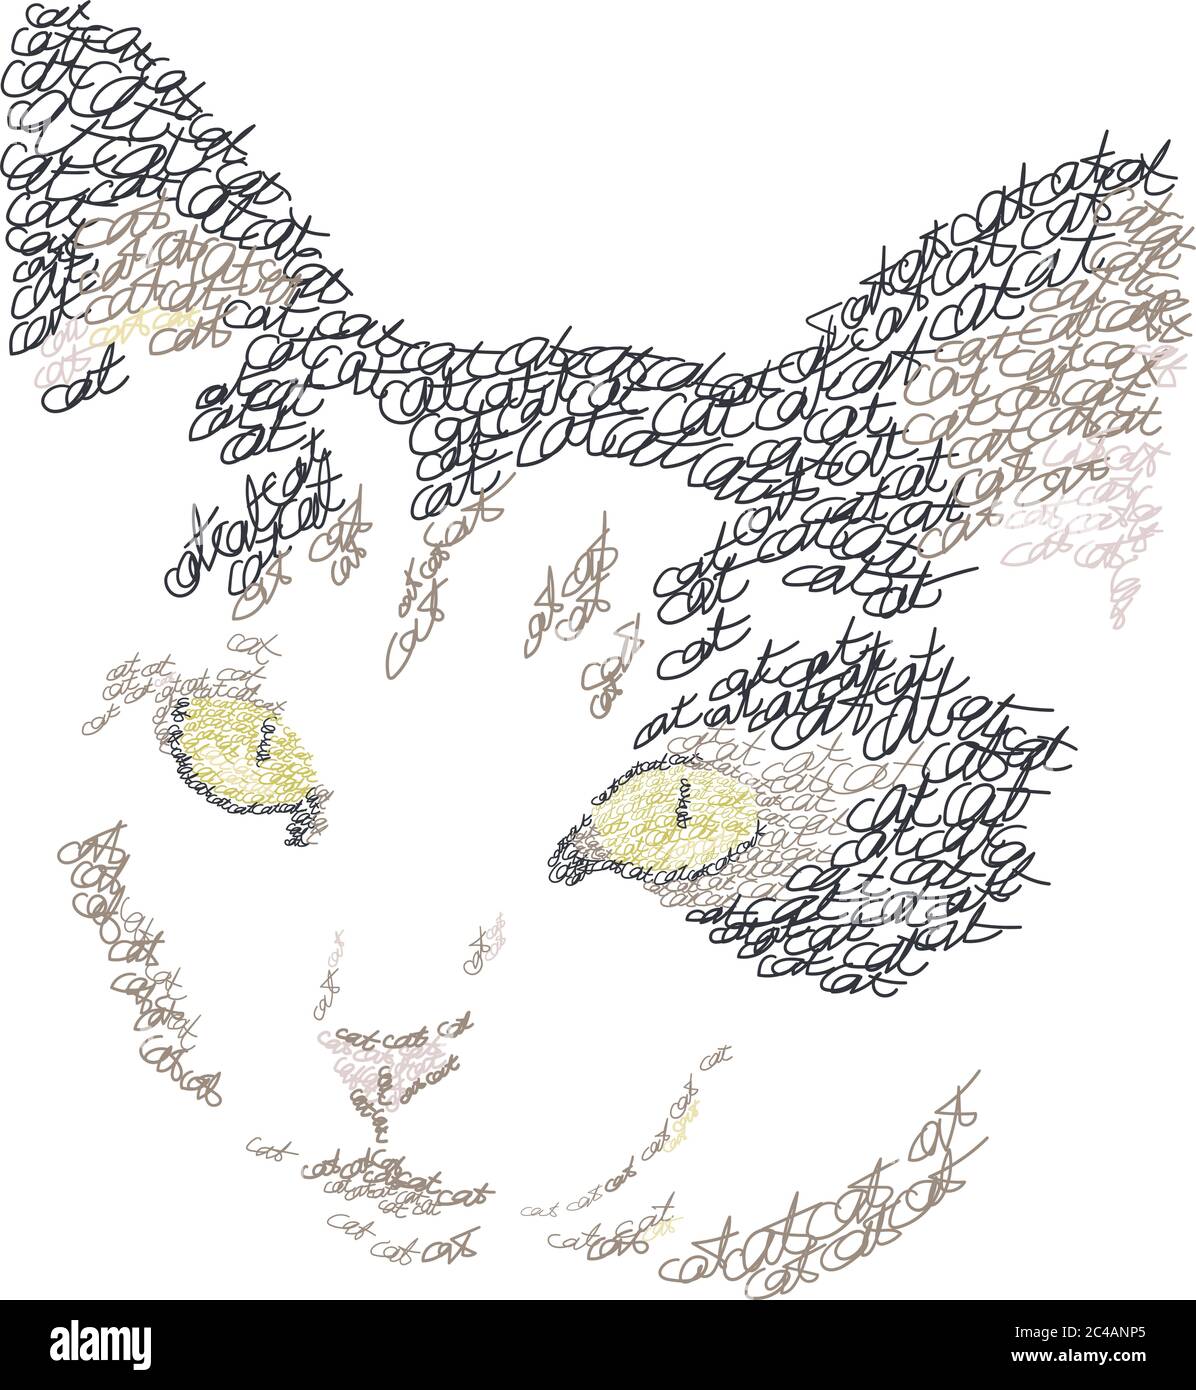 Katzenportrait aus Worten "Katze". Wörter, die in Form einer Katze komponiert sind. Dekorative Beschriftung Katze Vektor Illustration. Logo Design Konzept. Stock Vektor